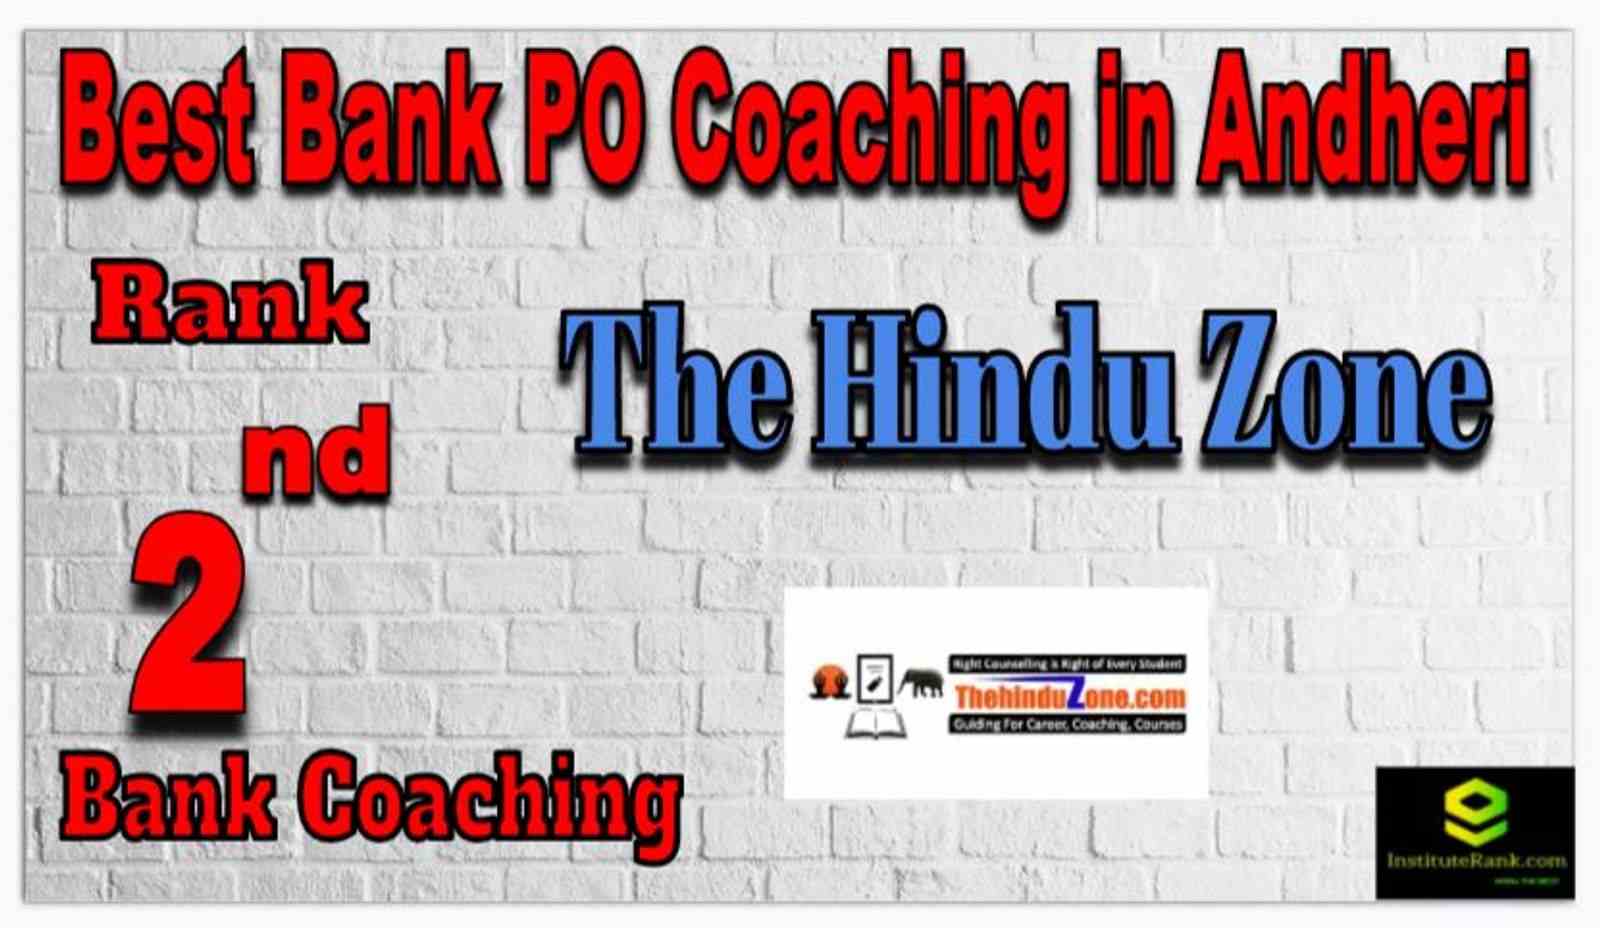 Rank 2 Best Bank PO Coachings in Andheri